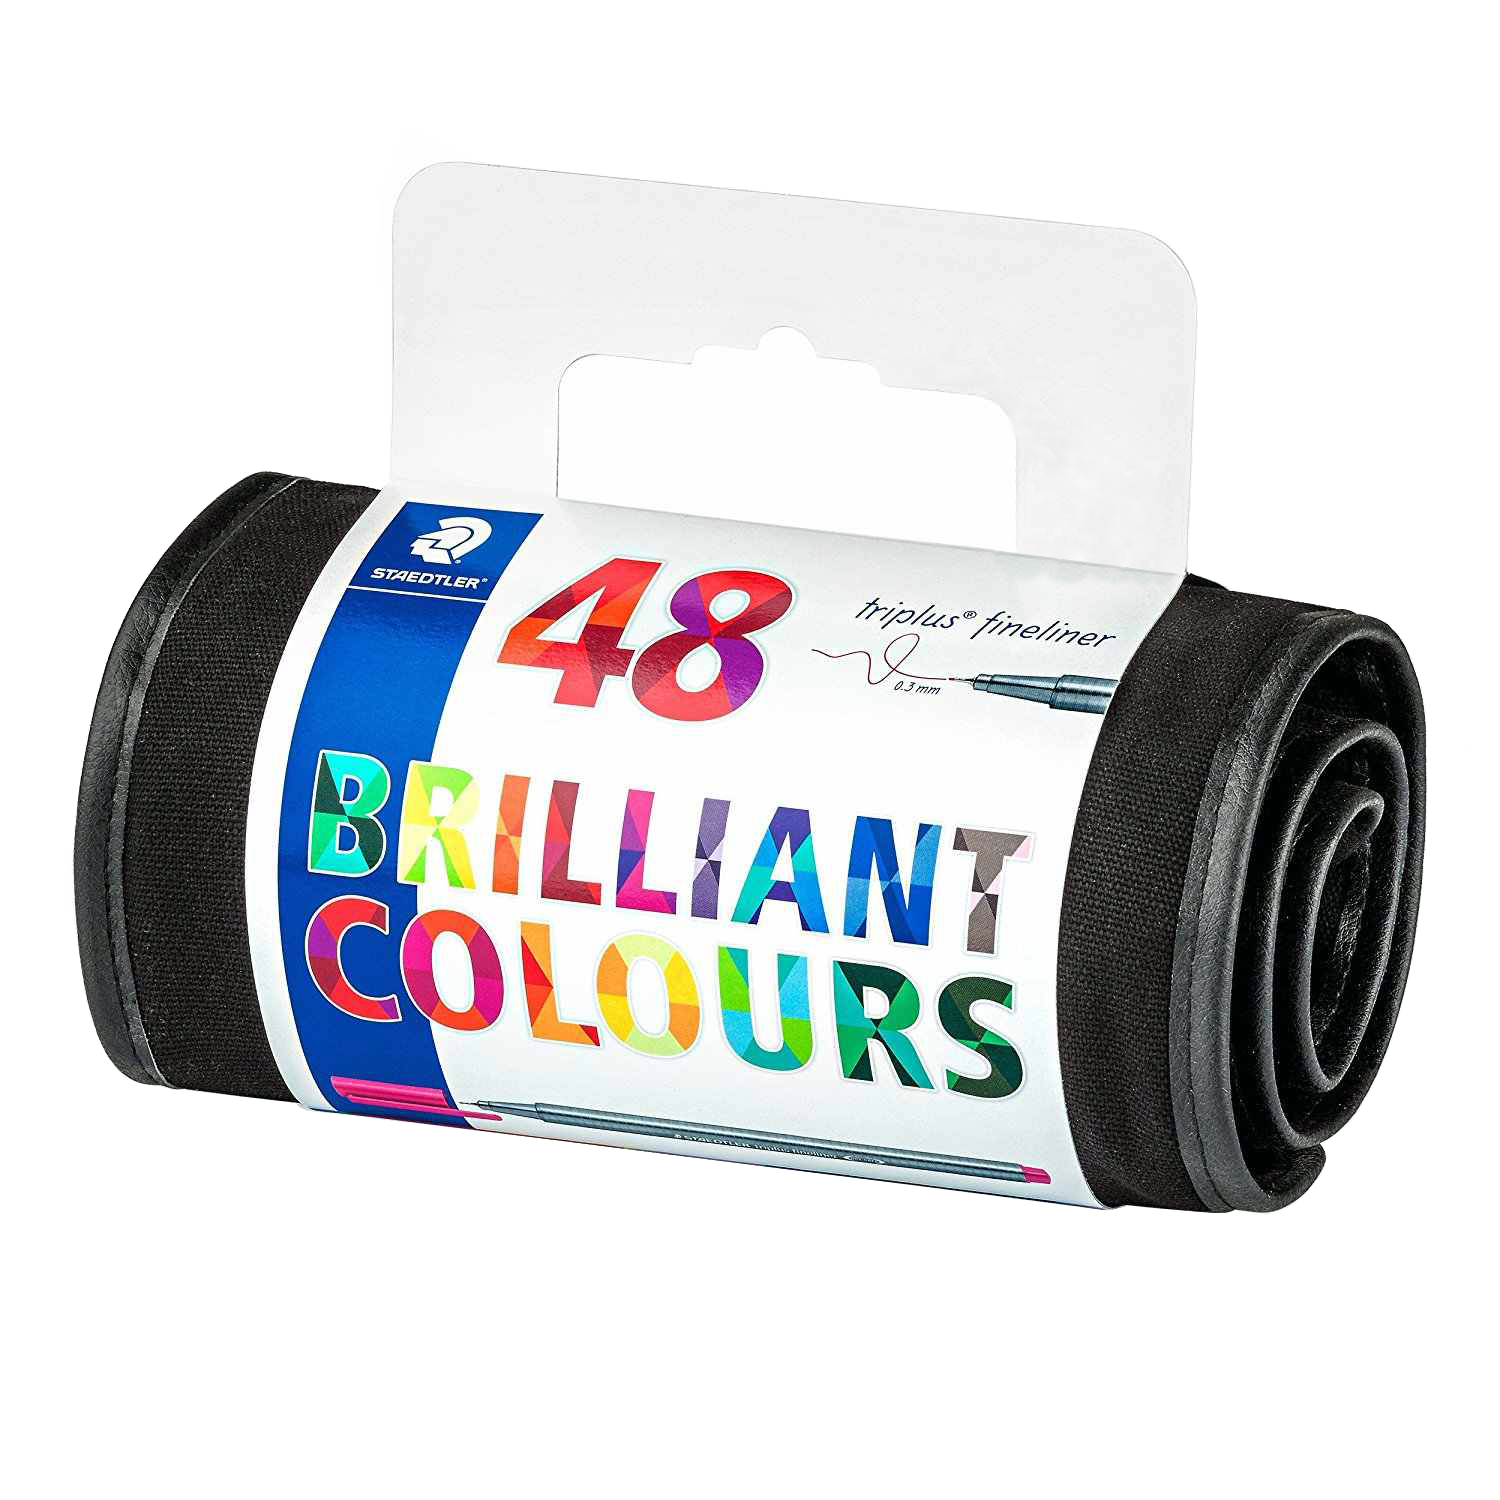 نقد و بررسی روان نویس استدلر کد 334RU48 مدل Triplus Fineliner Brilliant Colours بسته 48 عددی توسط خریداران